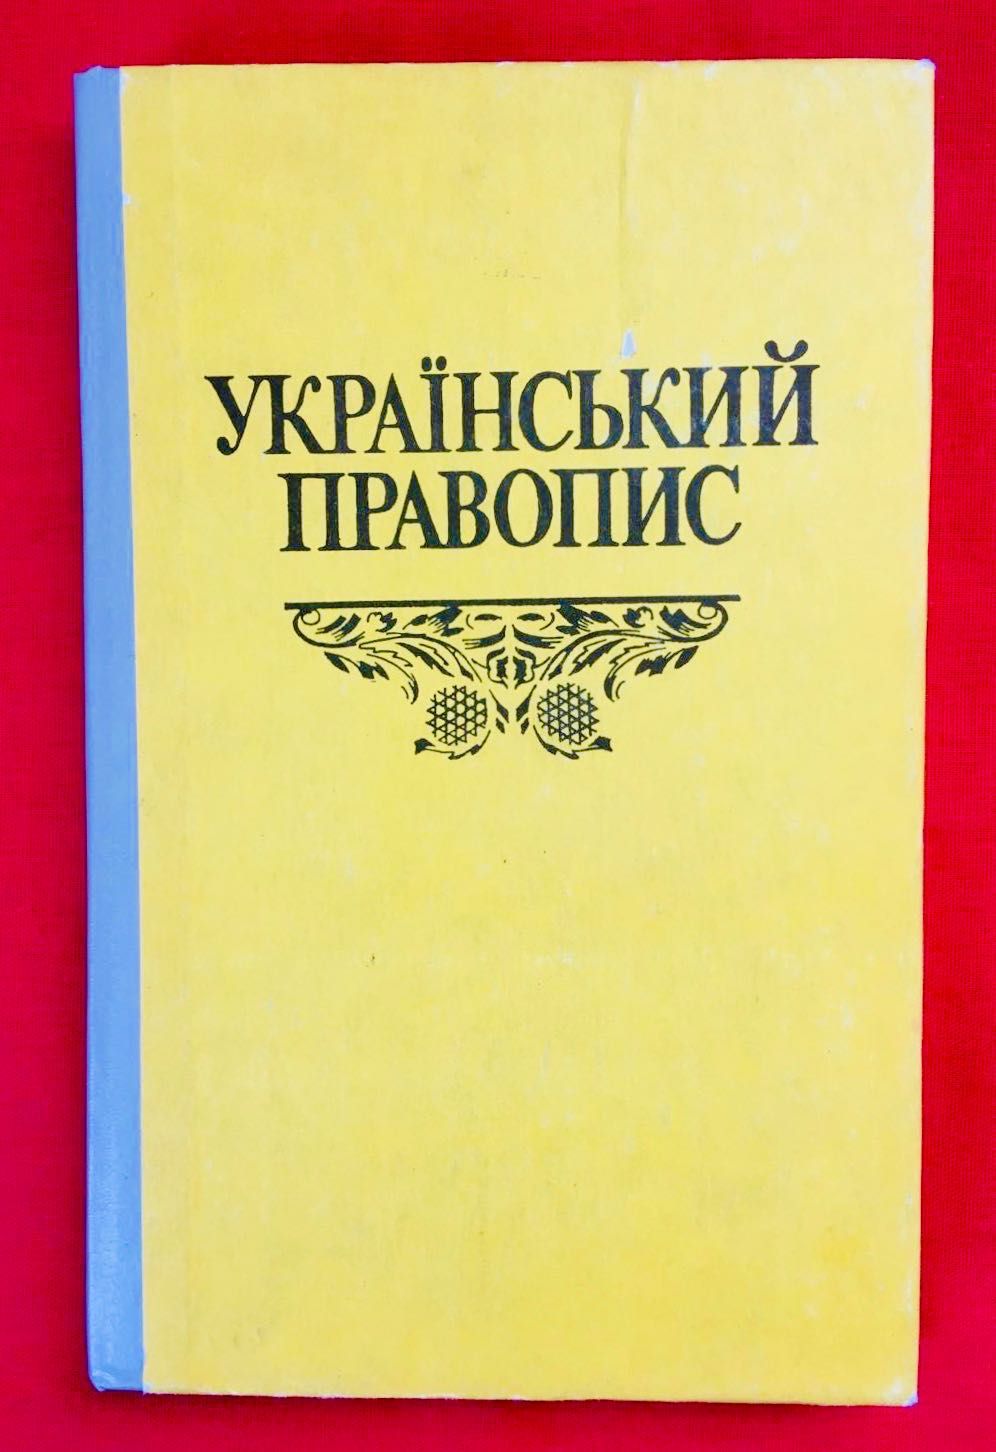 Шкільний підручник "Український правопис"